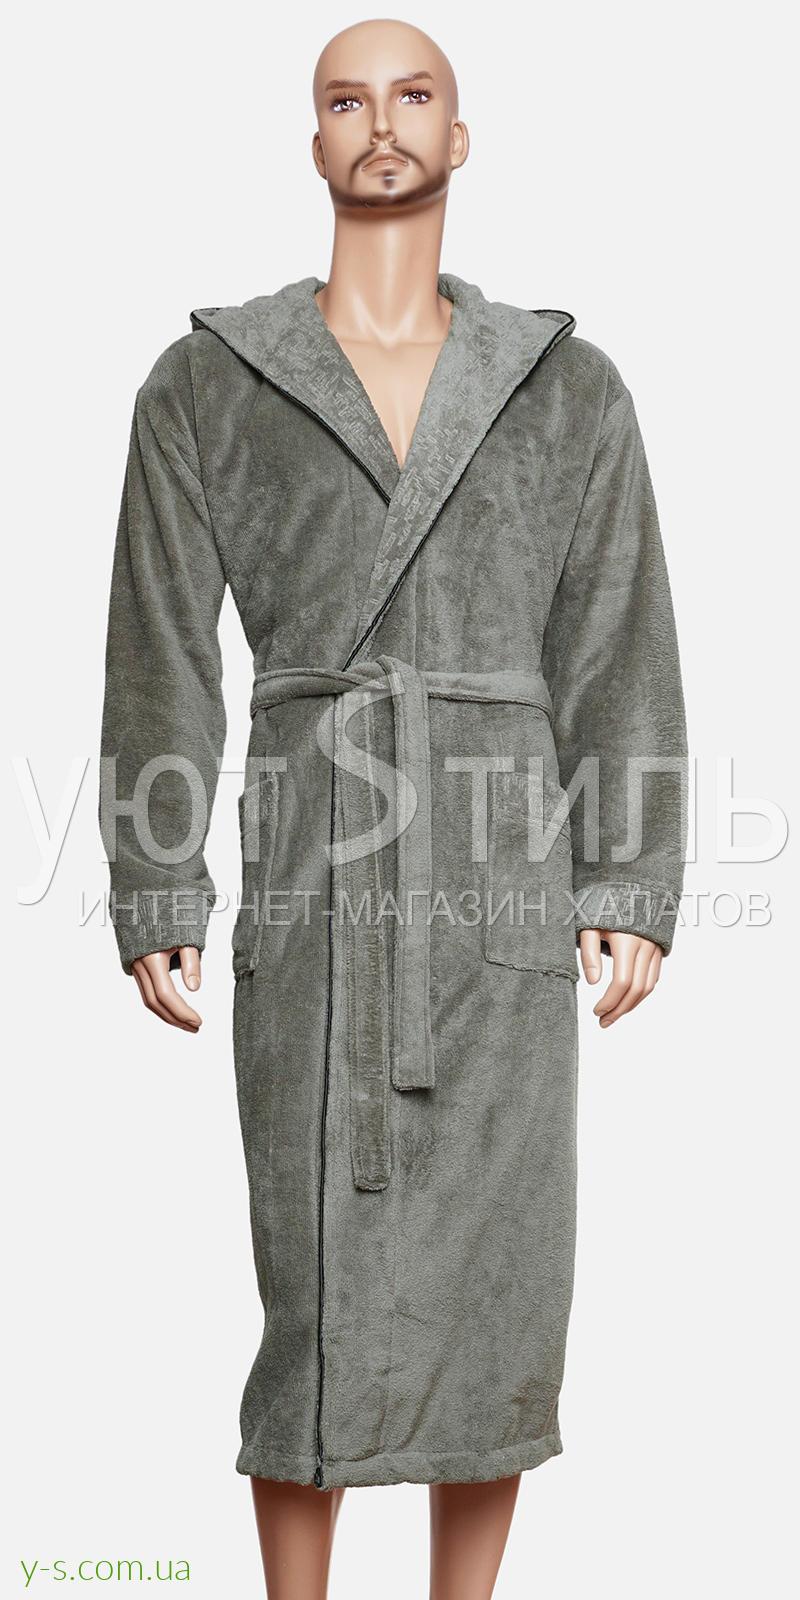 Оливковий бамбуковий халат для чоловіка BE9018